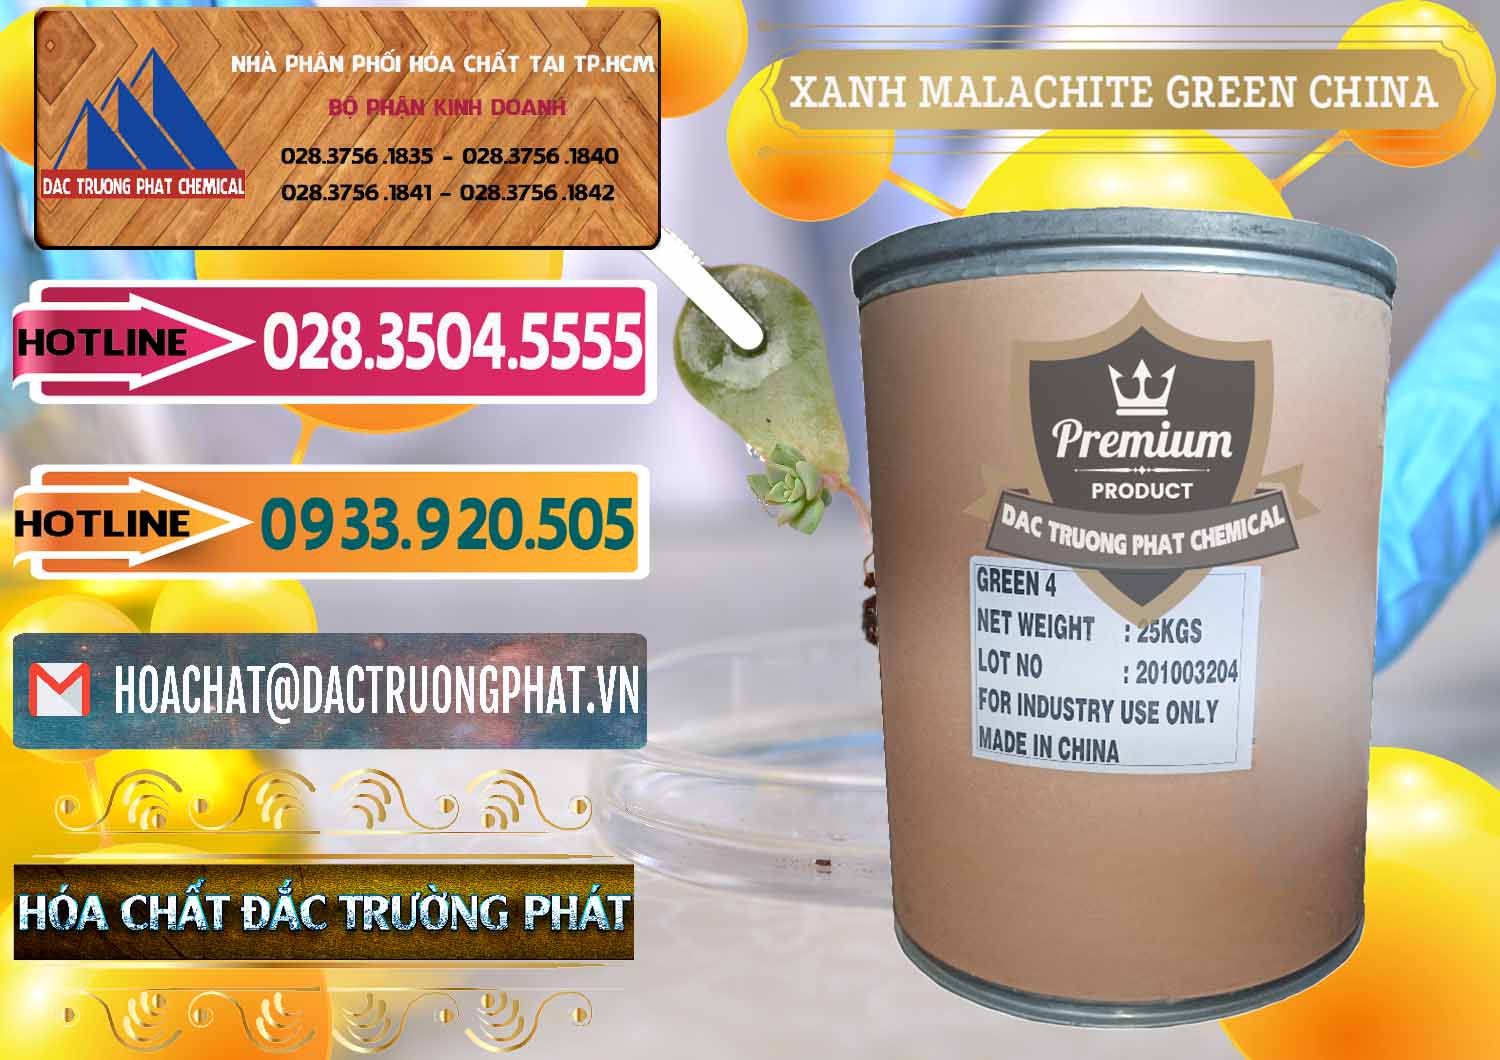 Cty chuyên cung cấp ( bán ) Xanh Malachite Green Trung Quốc China - 0325 - Kinh doanh _ cung cấp hóa chất tại TP.HCM - dactruongphat.vn